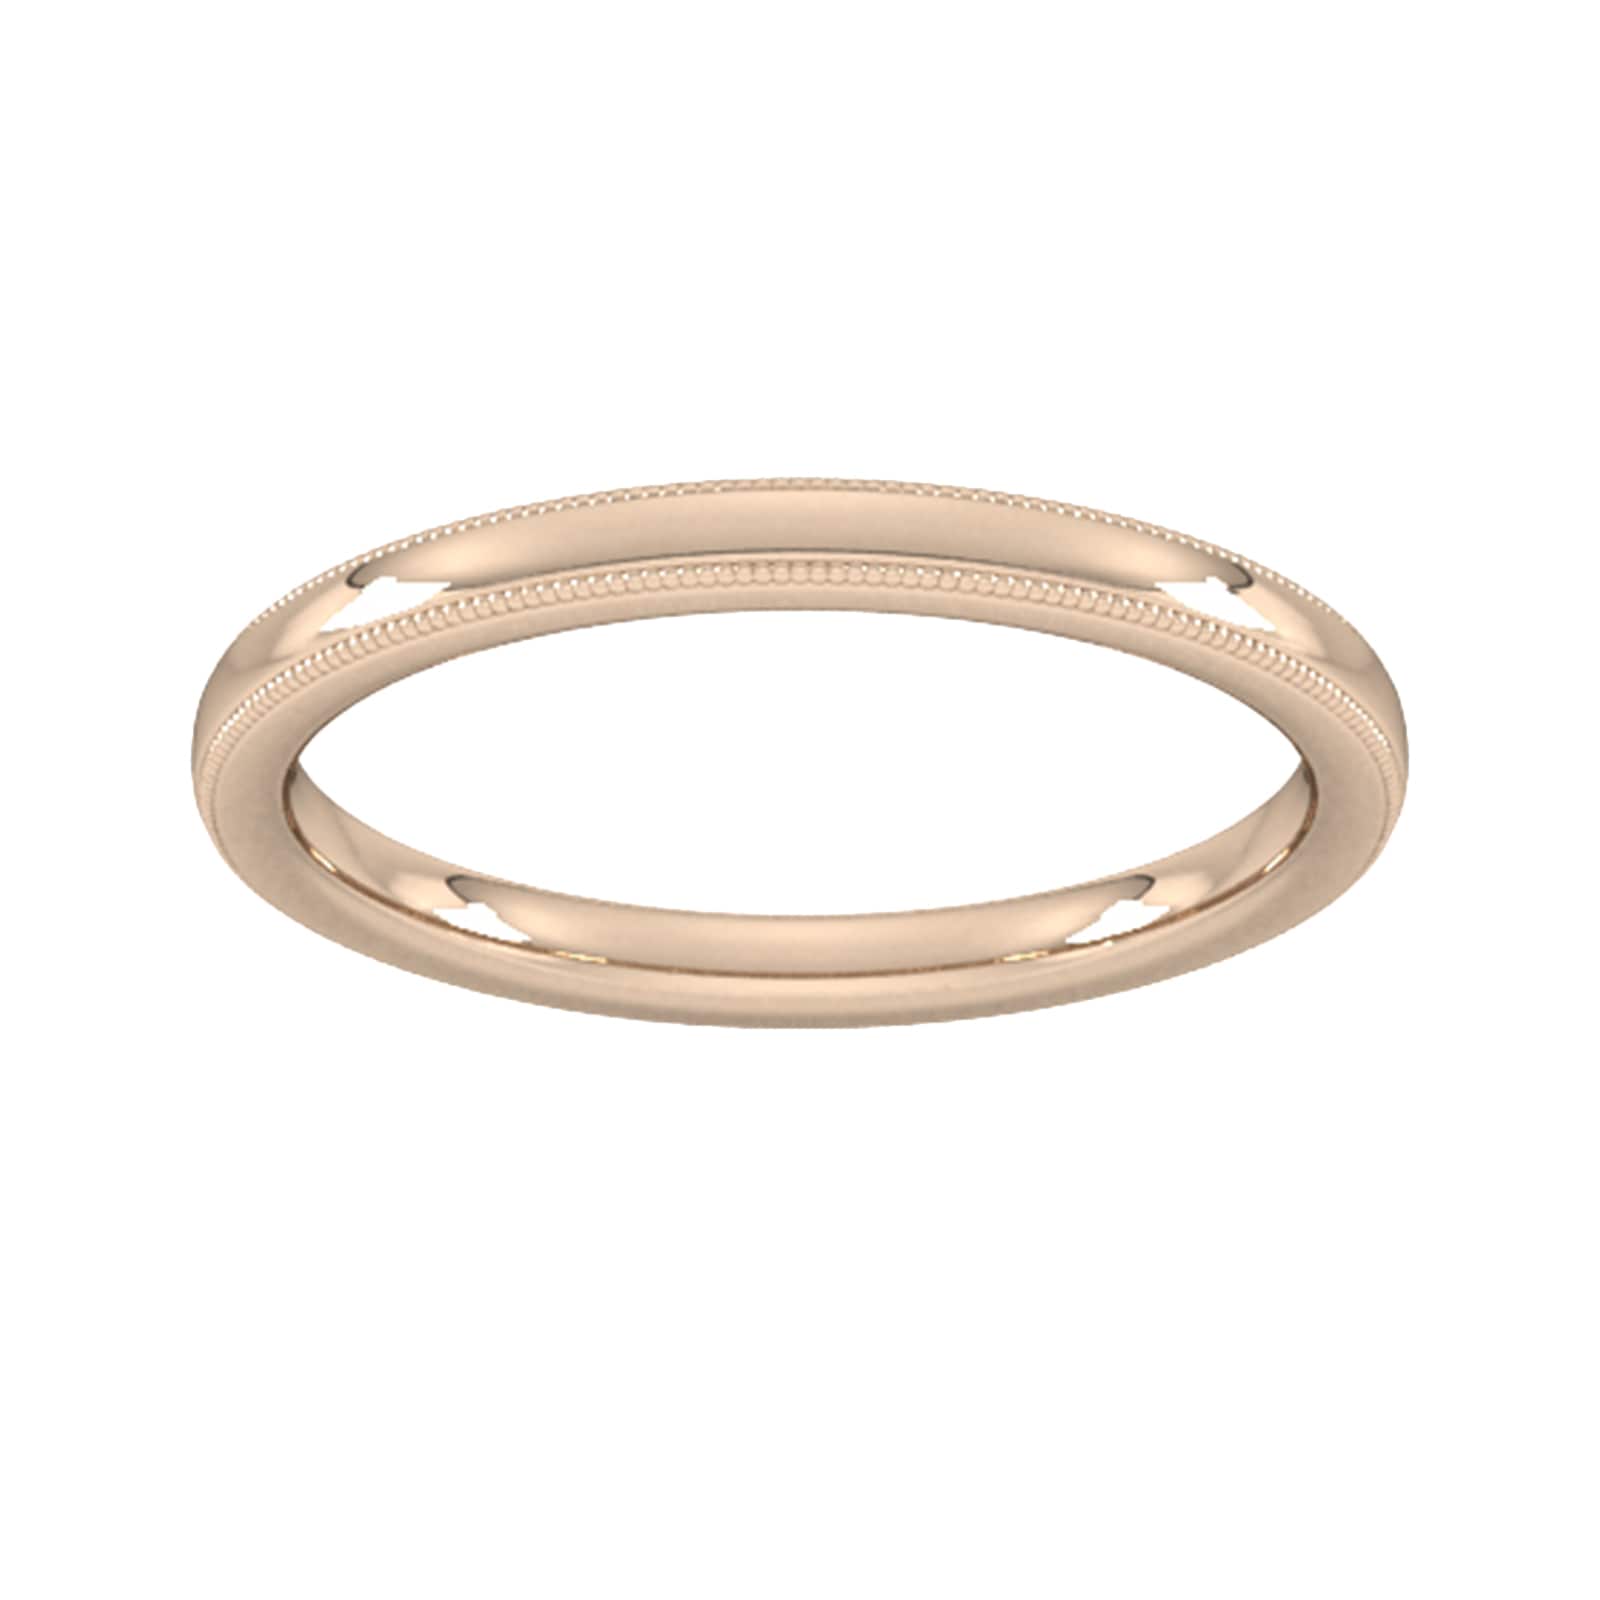 2mm Slight Court Standard Milgrain Edge Wedding Ring In 18 Carat Rose Gold - Ring Size W